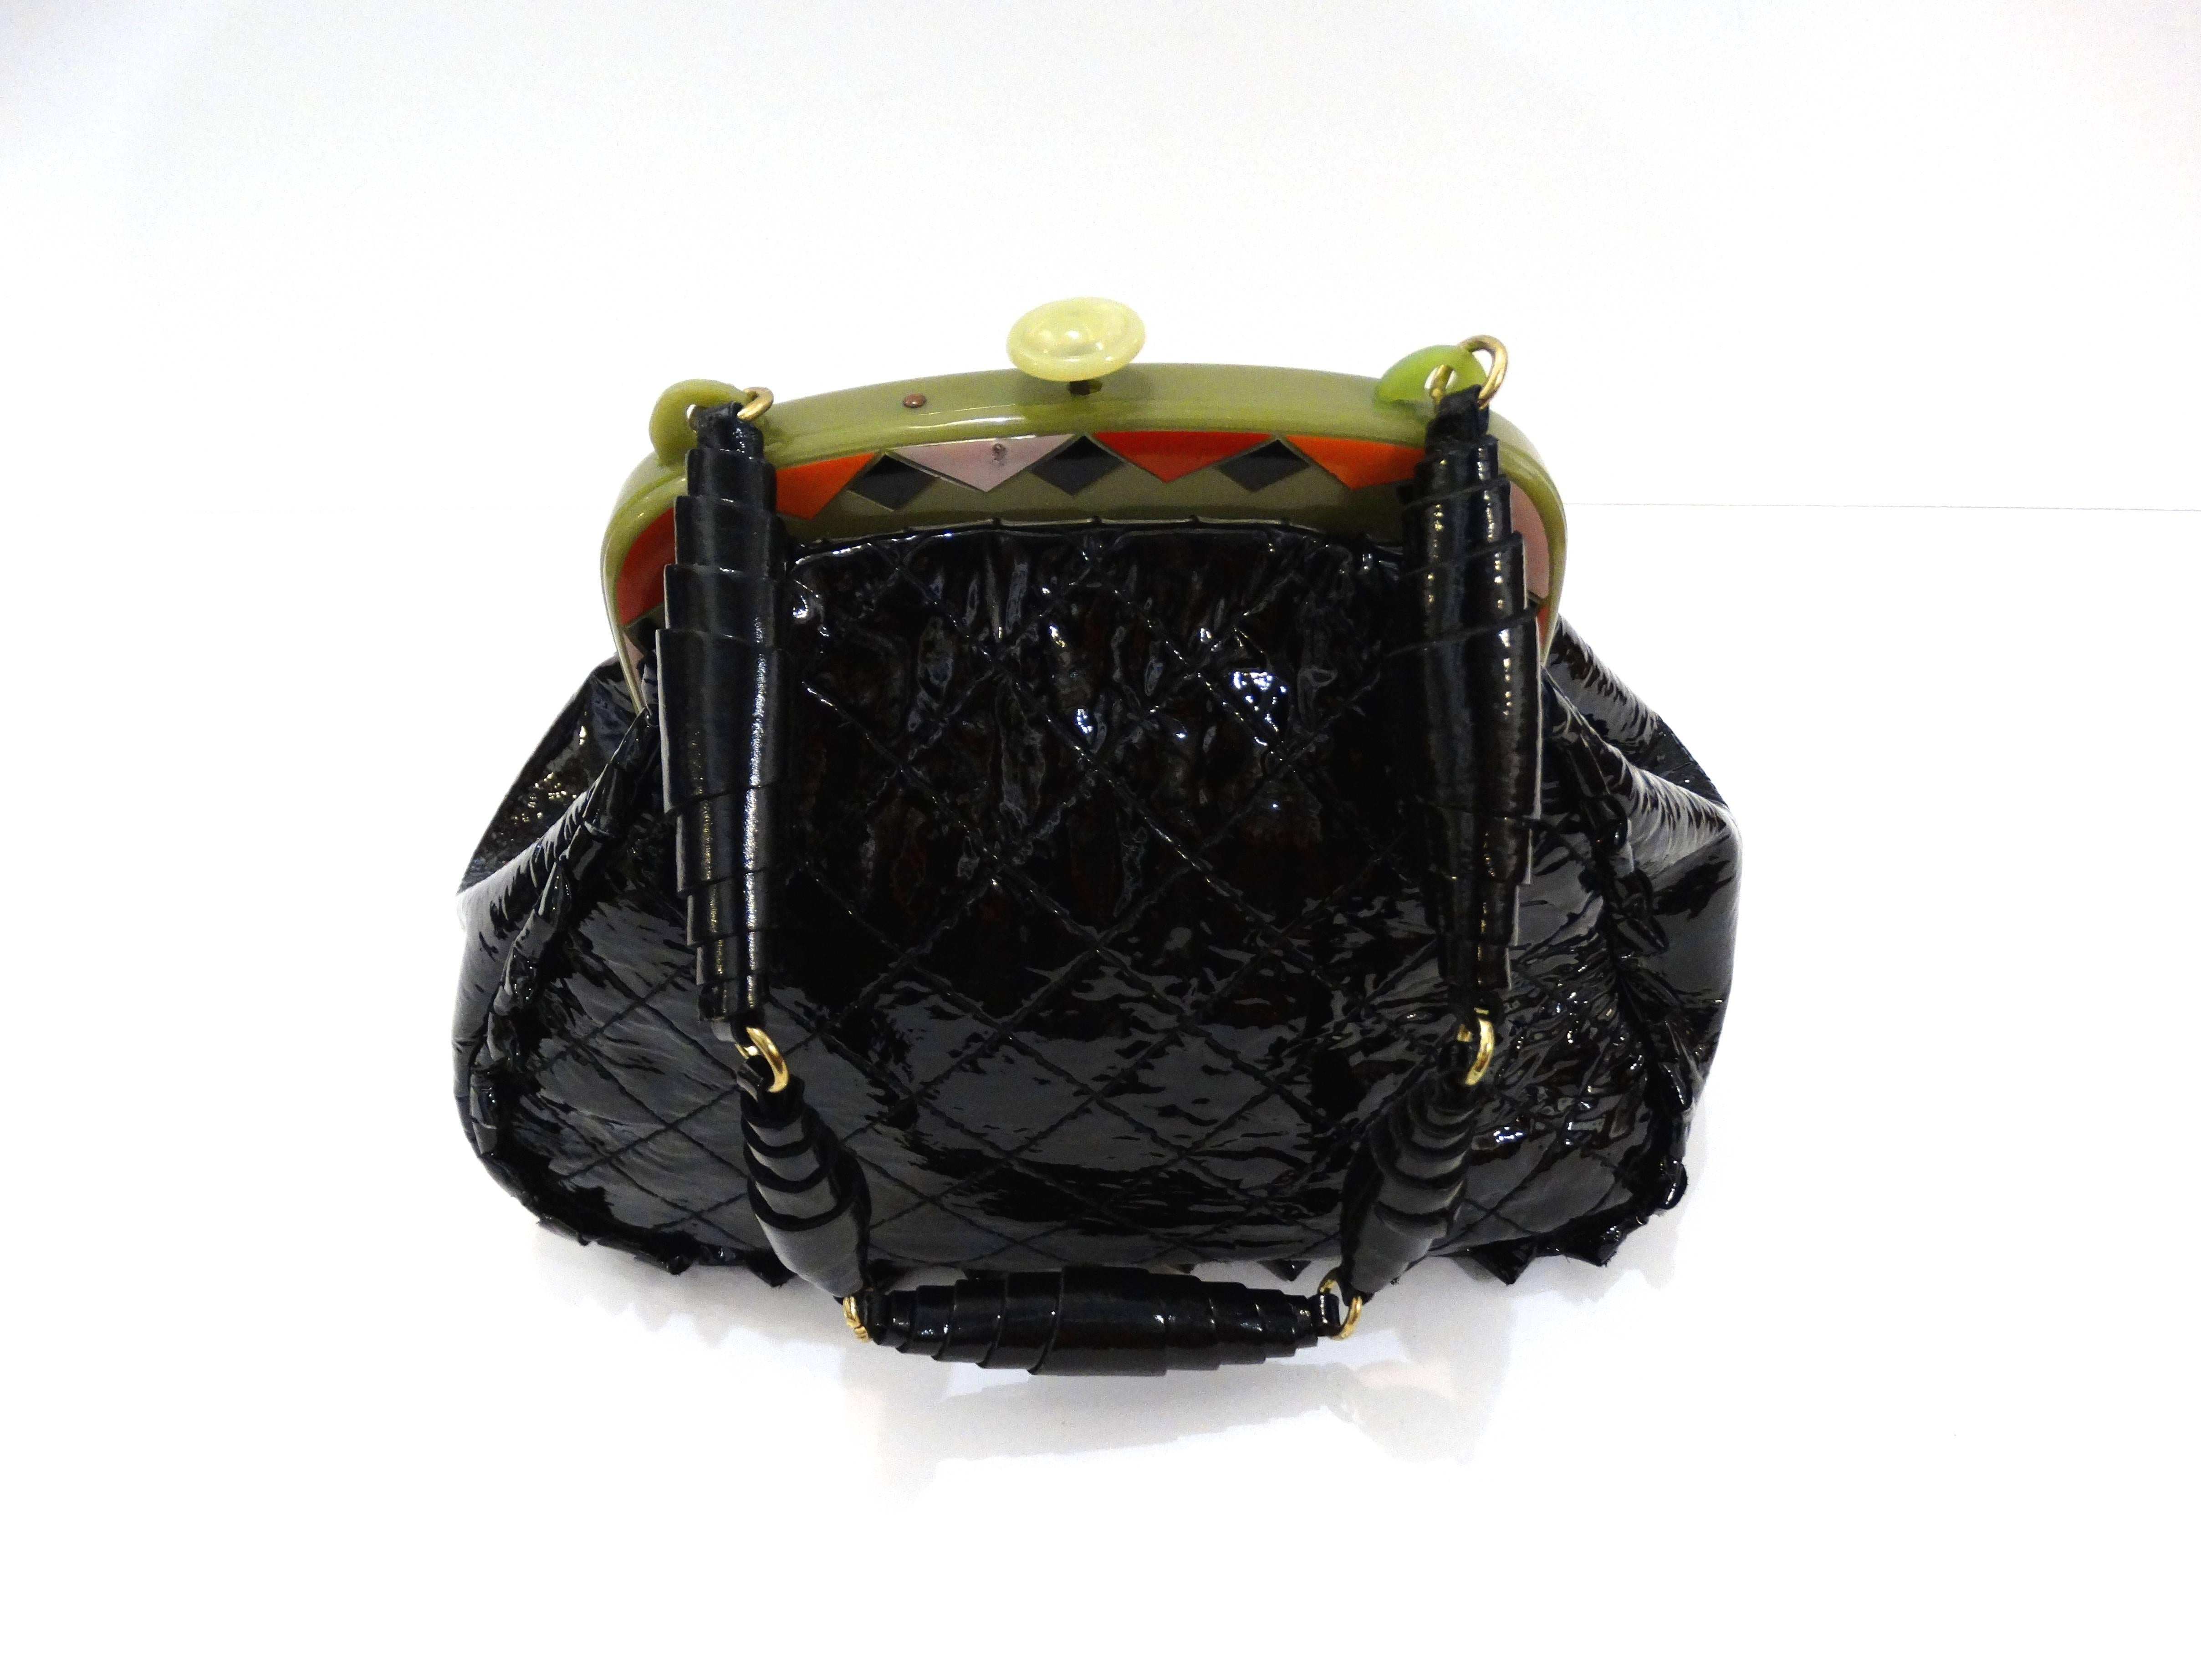 Erstaunliche benutzerdefinierte Vintage Anthony Luciano schwarz gesteppt Lack Handtasche, außen mit einem gezackten trimmen akzentuiert. Ein grüner Kunststoffrahmen mit farbenfrohen roten und pastellschwarzen geometrischen Formen und einem